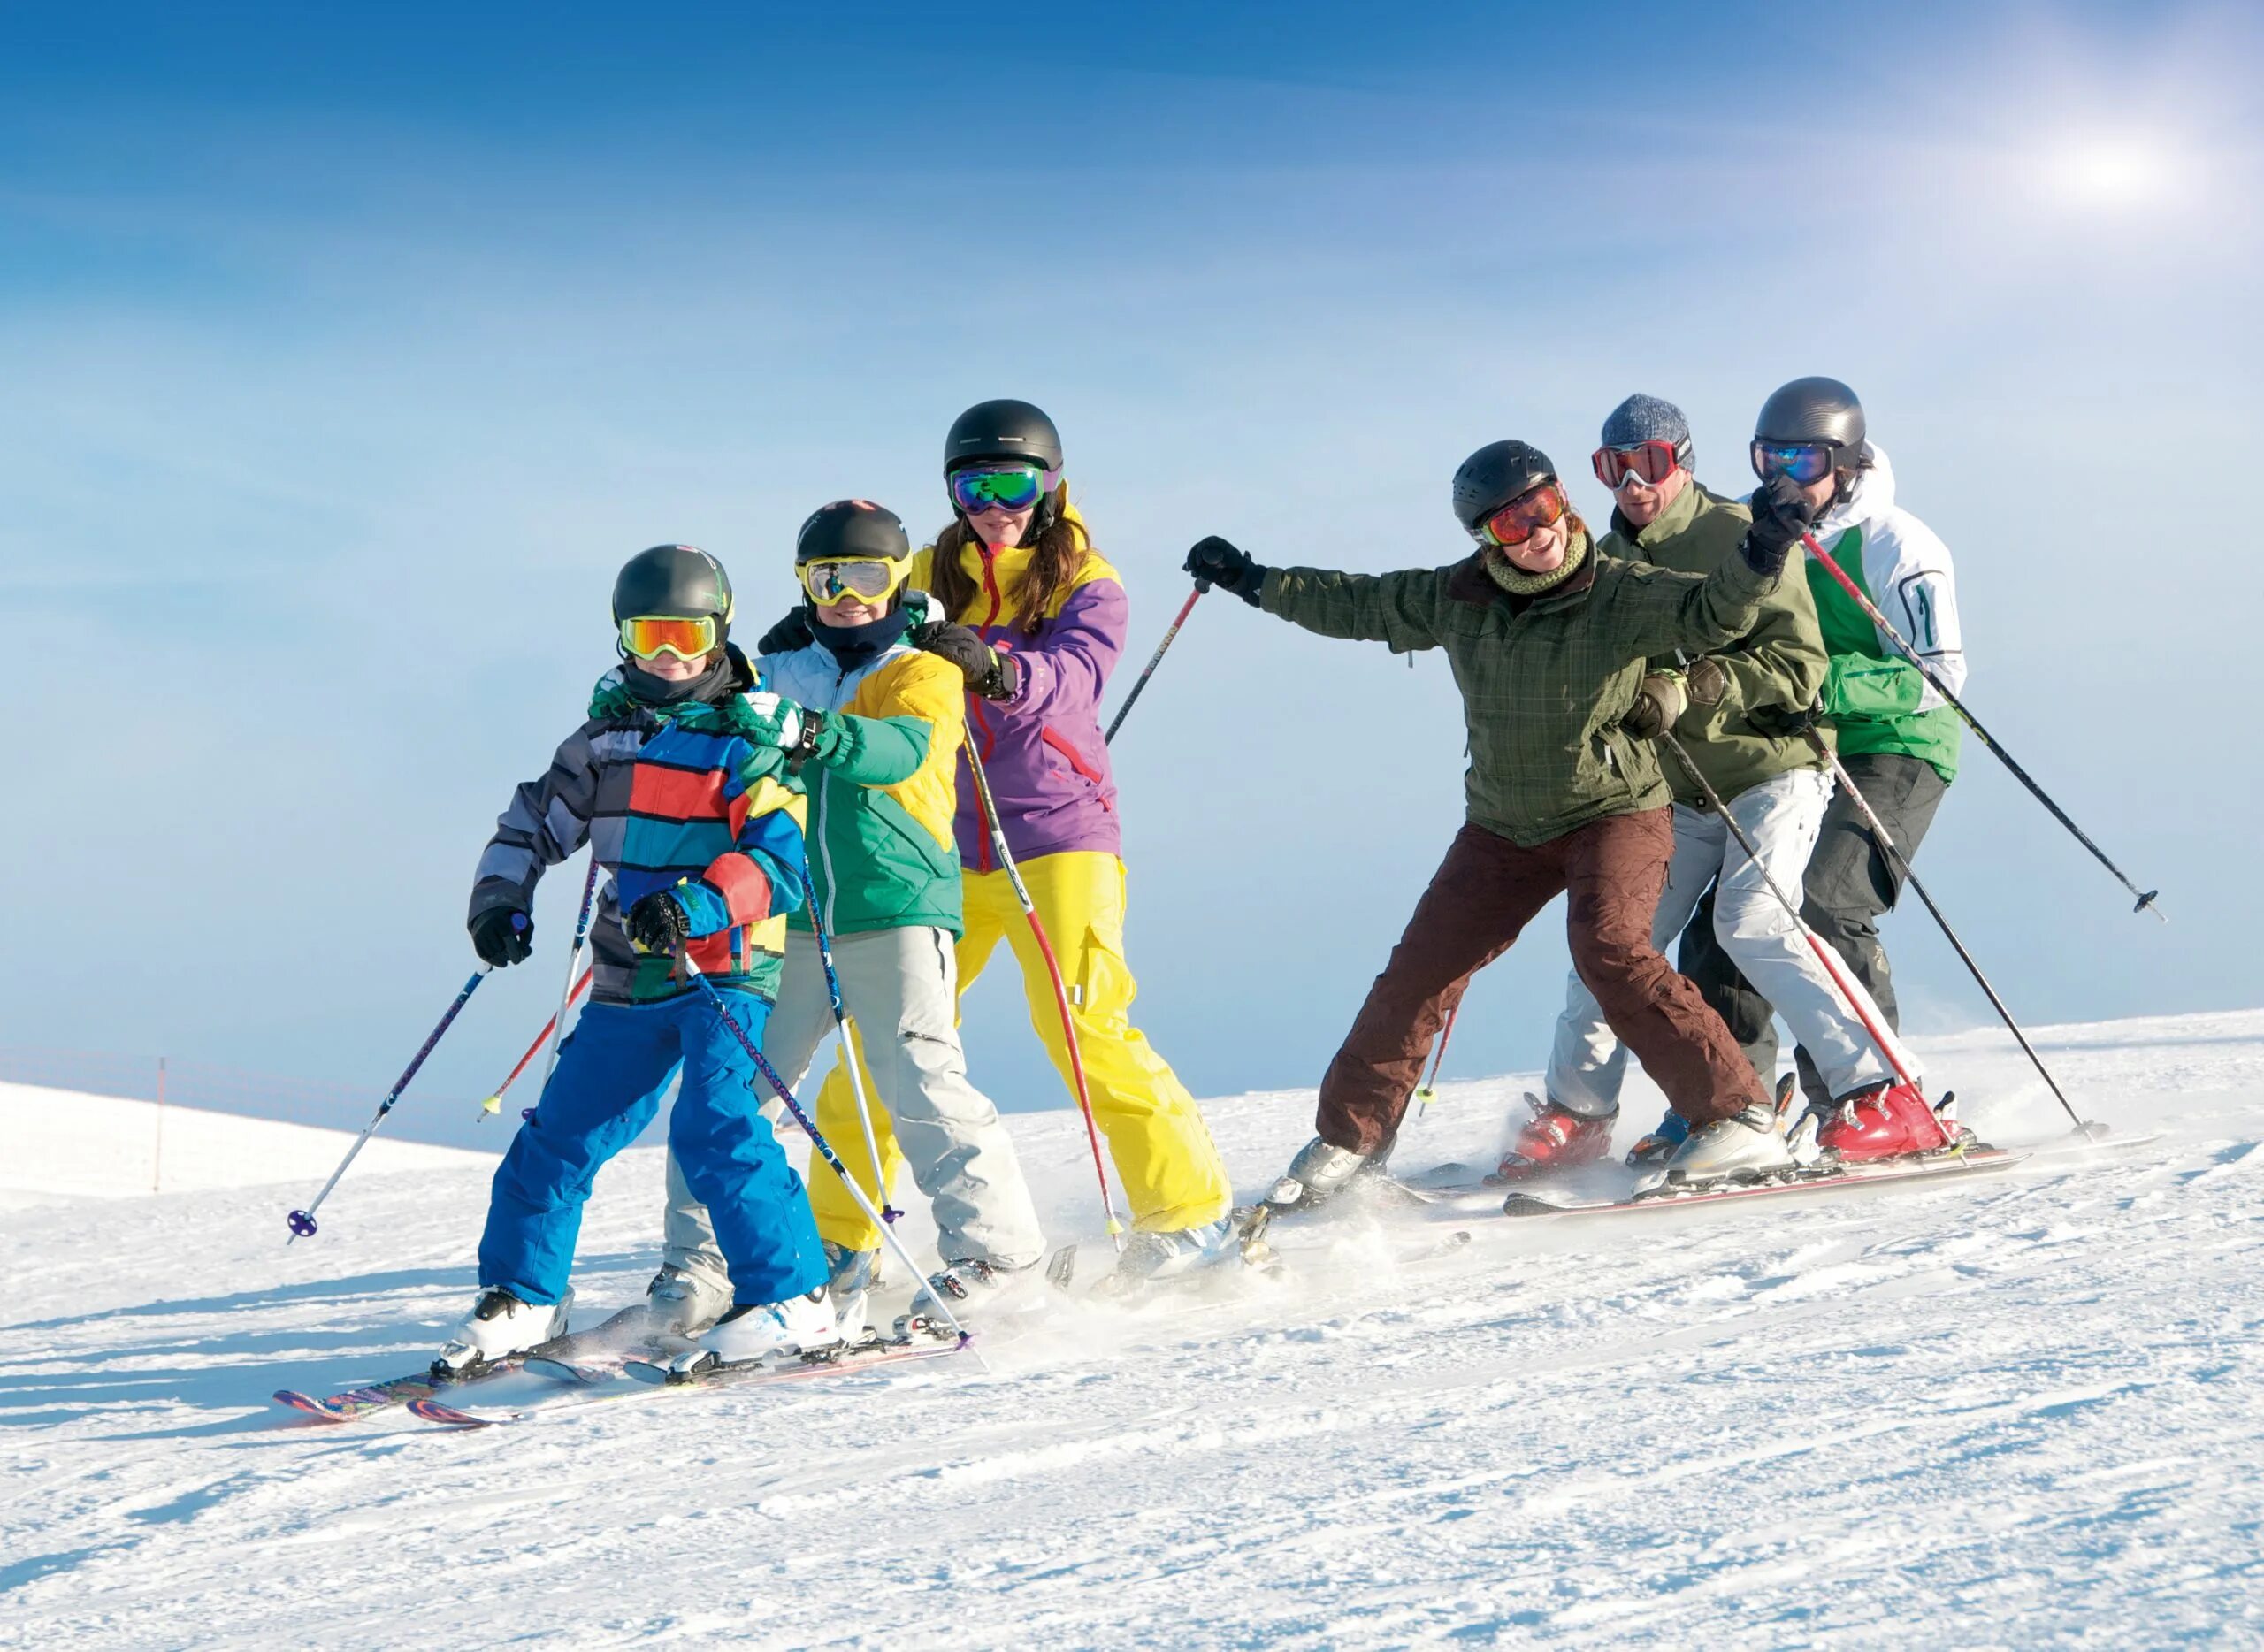 Катание на лыжах. Семья катается на лыжах. Друзья на лыжах. Горные лыжи. Семья лыжников